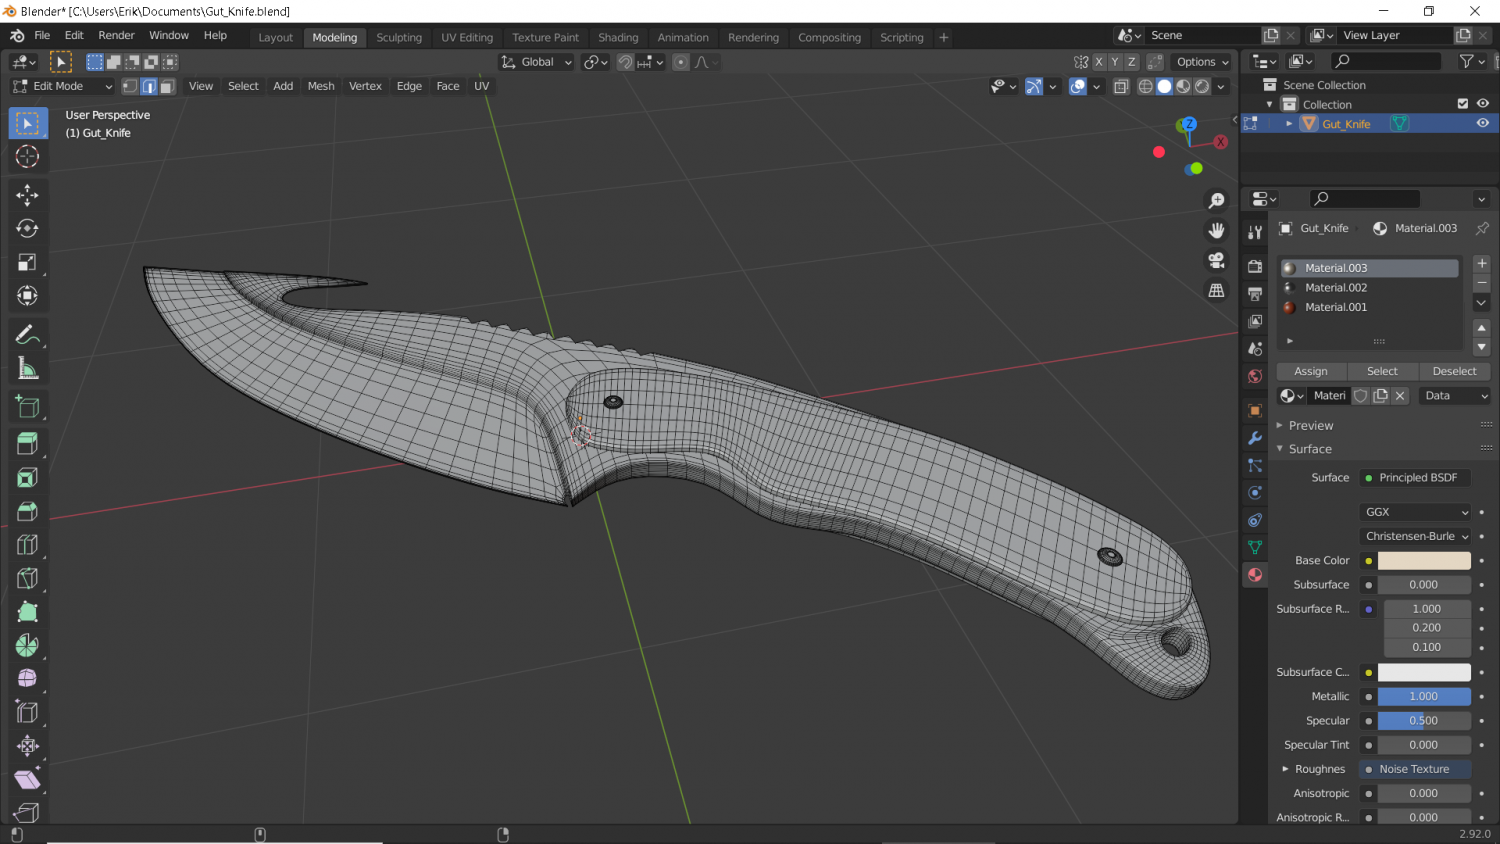 gut knife 3D Model in Combat 3DExport